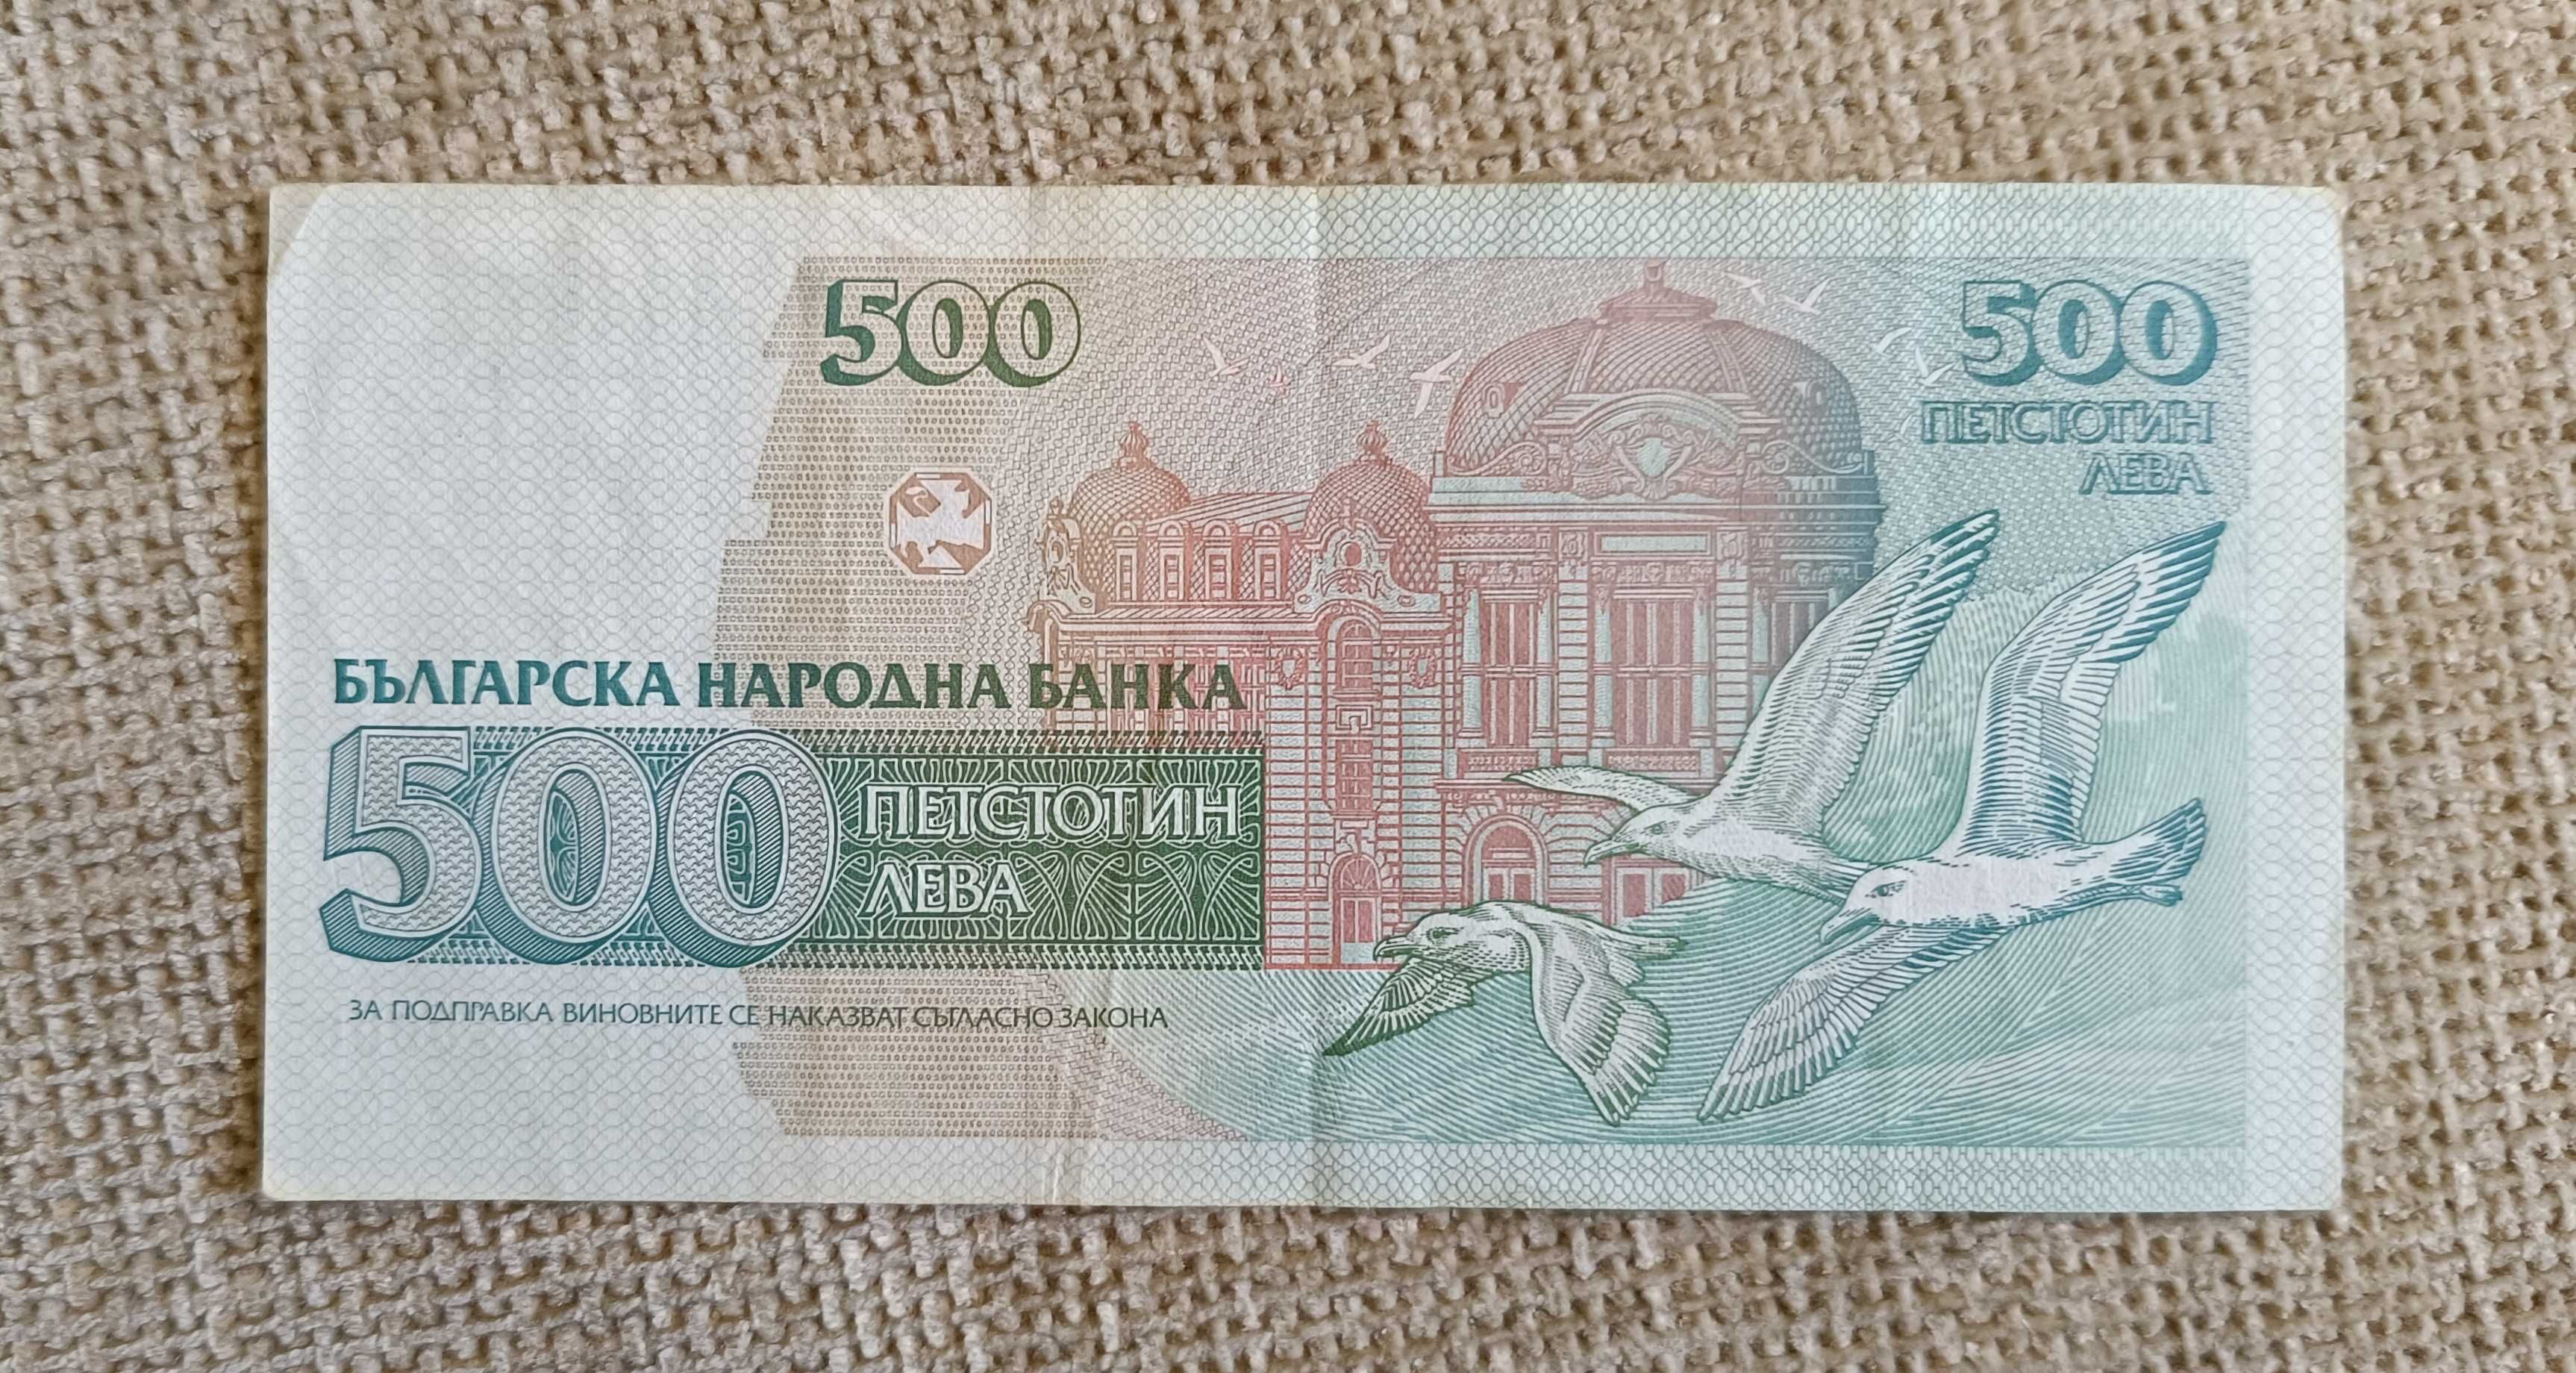 Българска банкнота 500 лева с лика на Добри Христов. Номер АП 8750000.